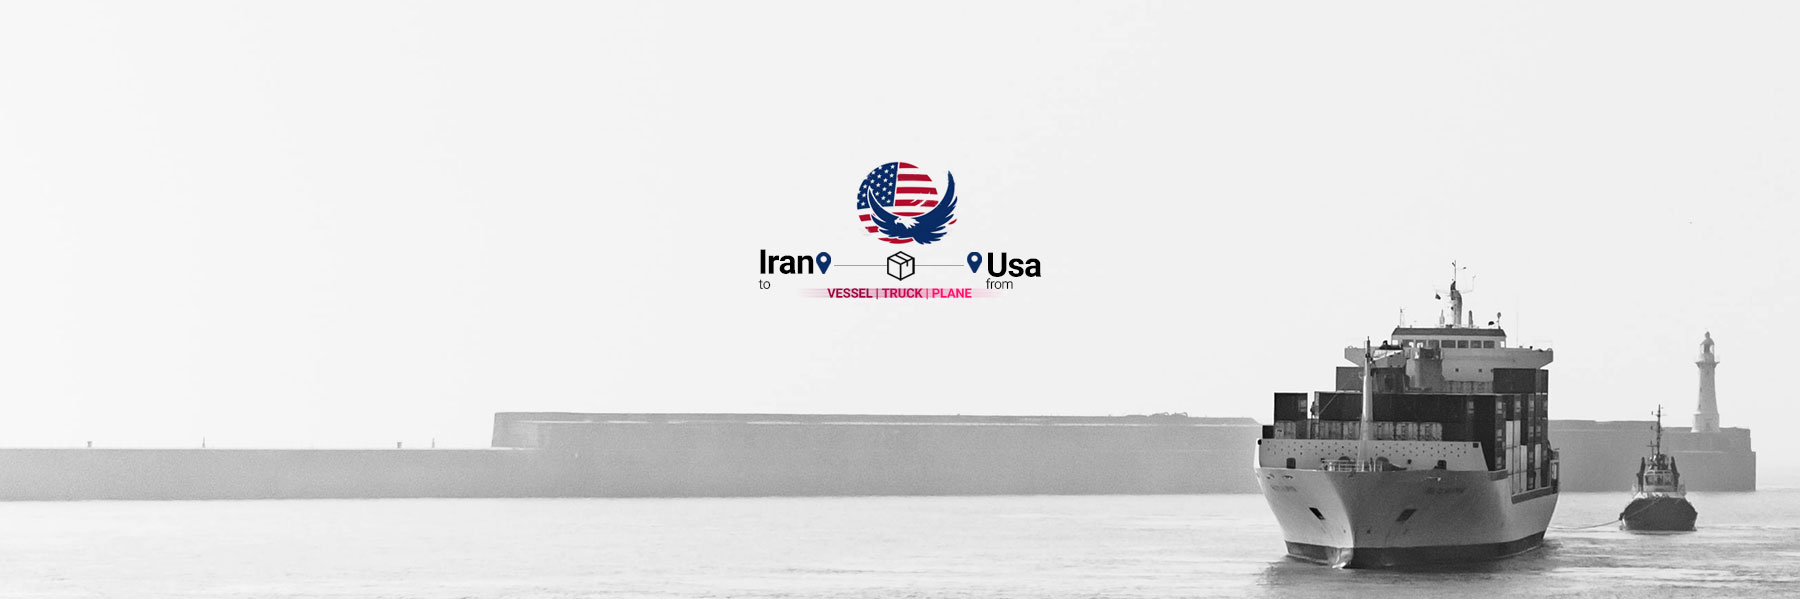 ارسال بار از آمریکا به ایران